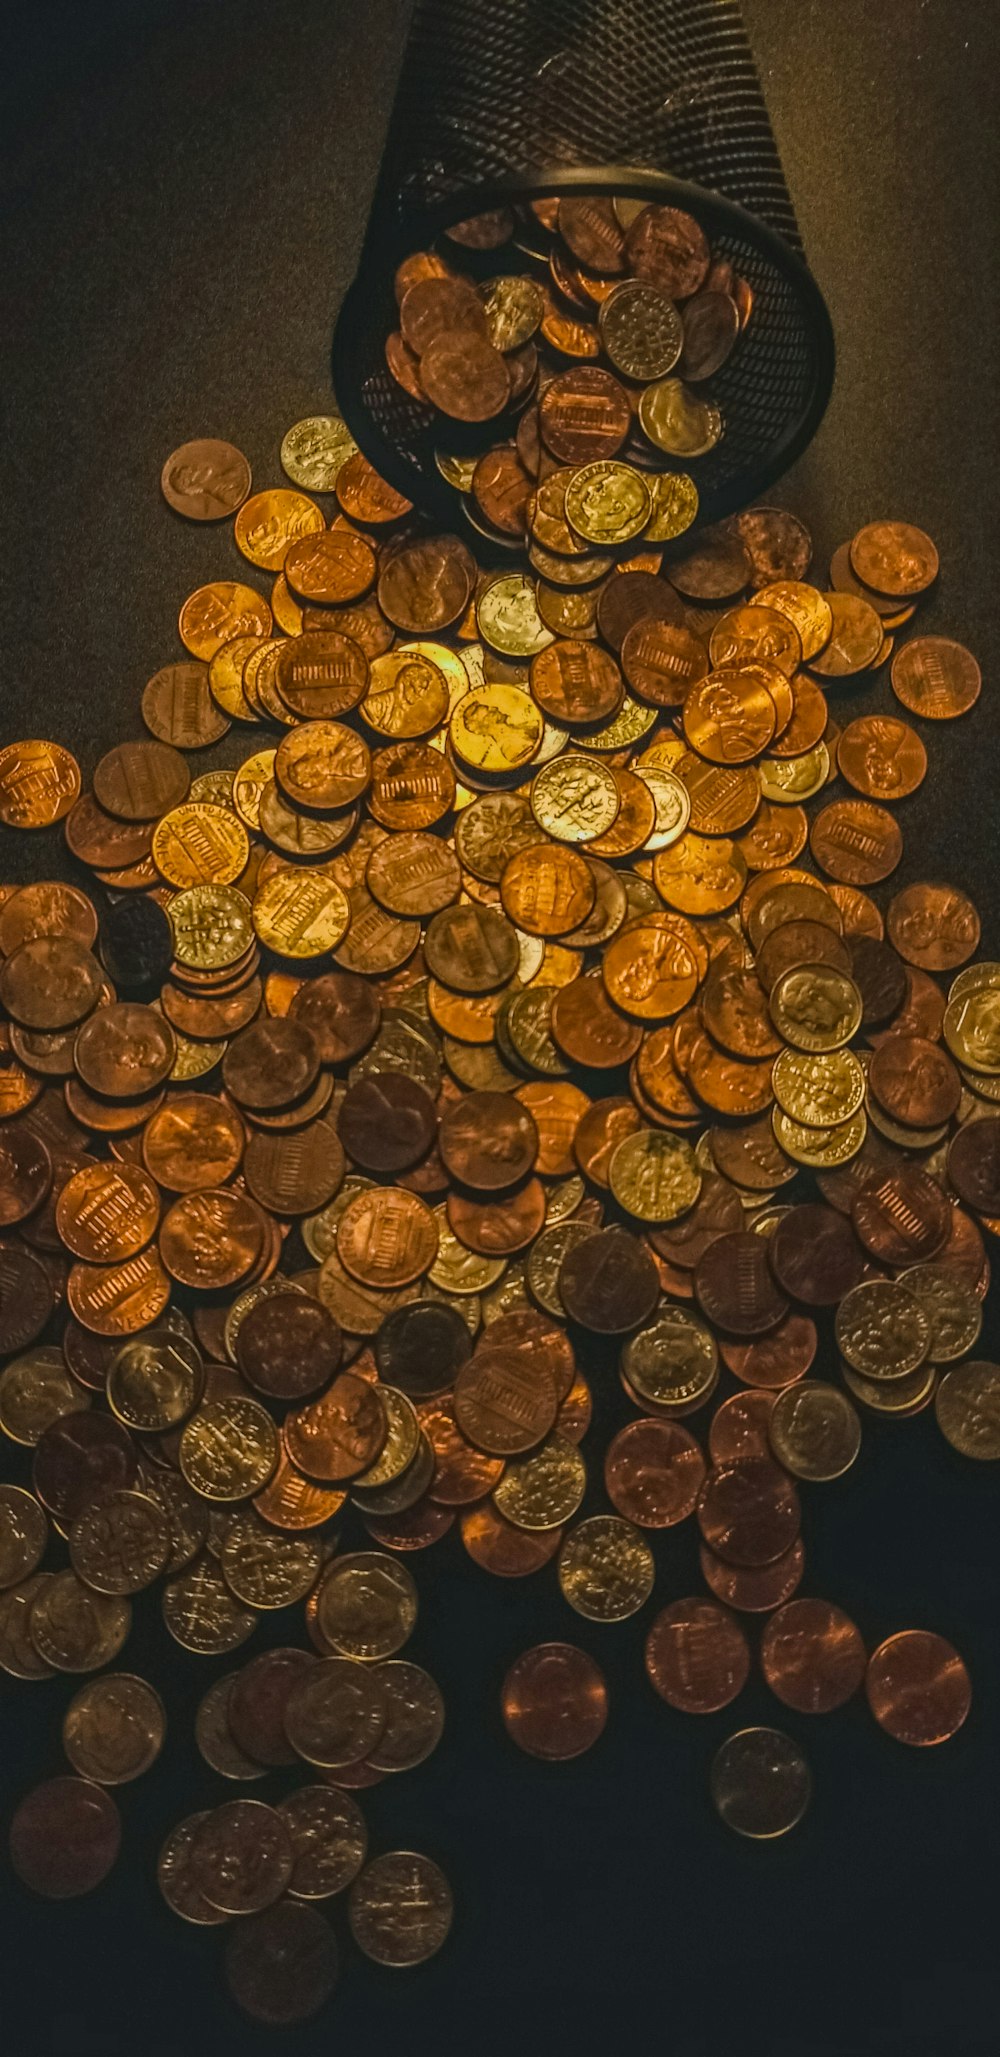 Monedas redondas de oro sobre tela negra